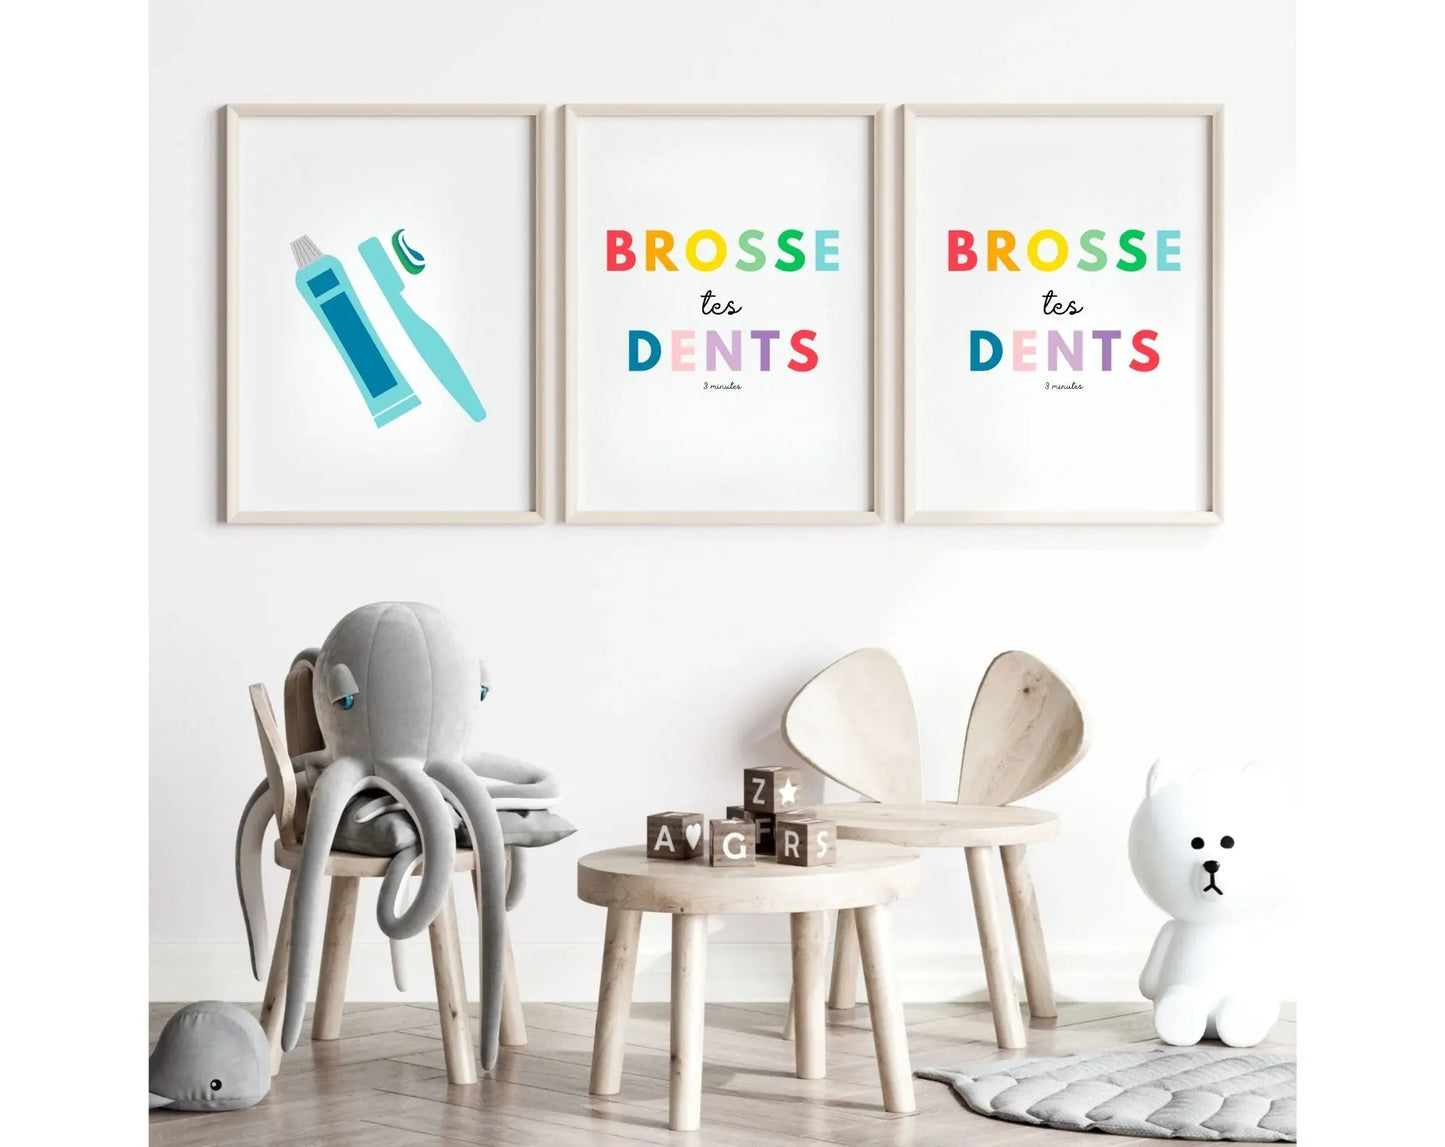 Brosse tes dents Affiche - Poster éducatif Montessori FLTMfrance